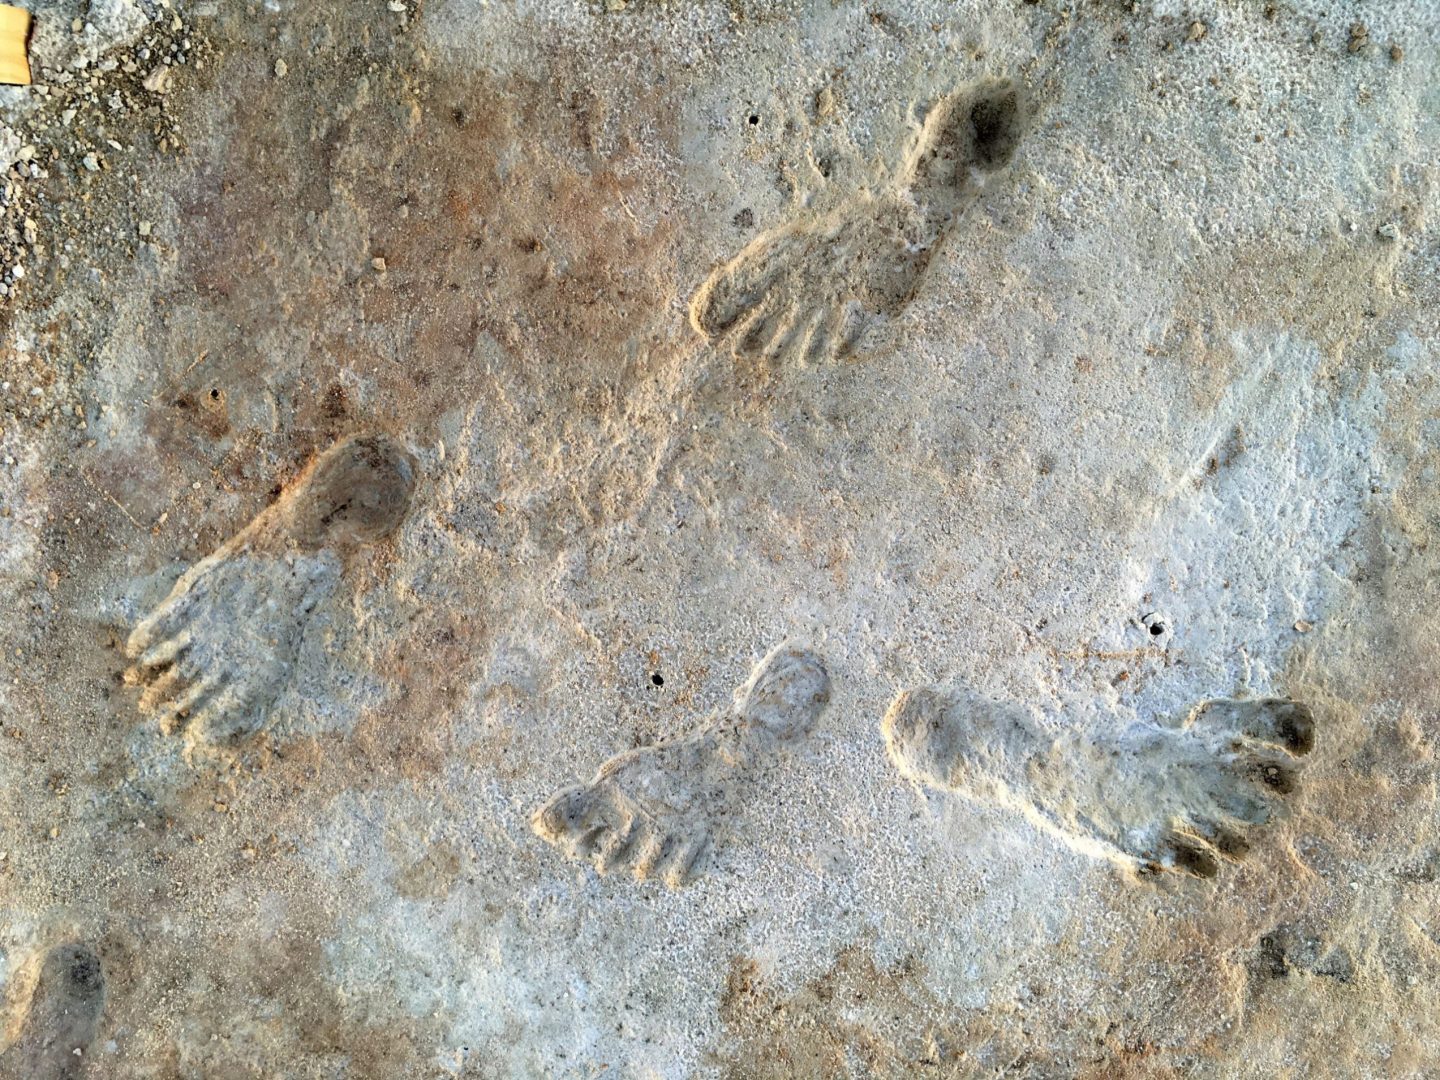 Close-up footprints at WHSA